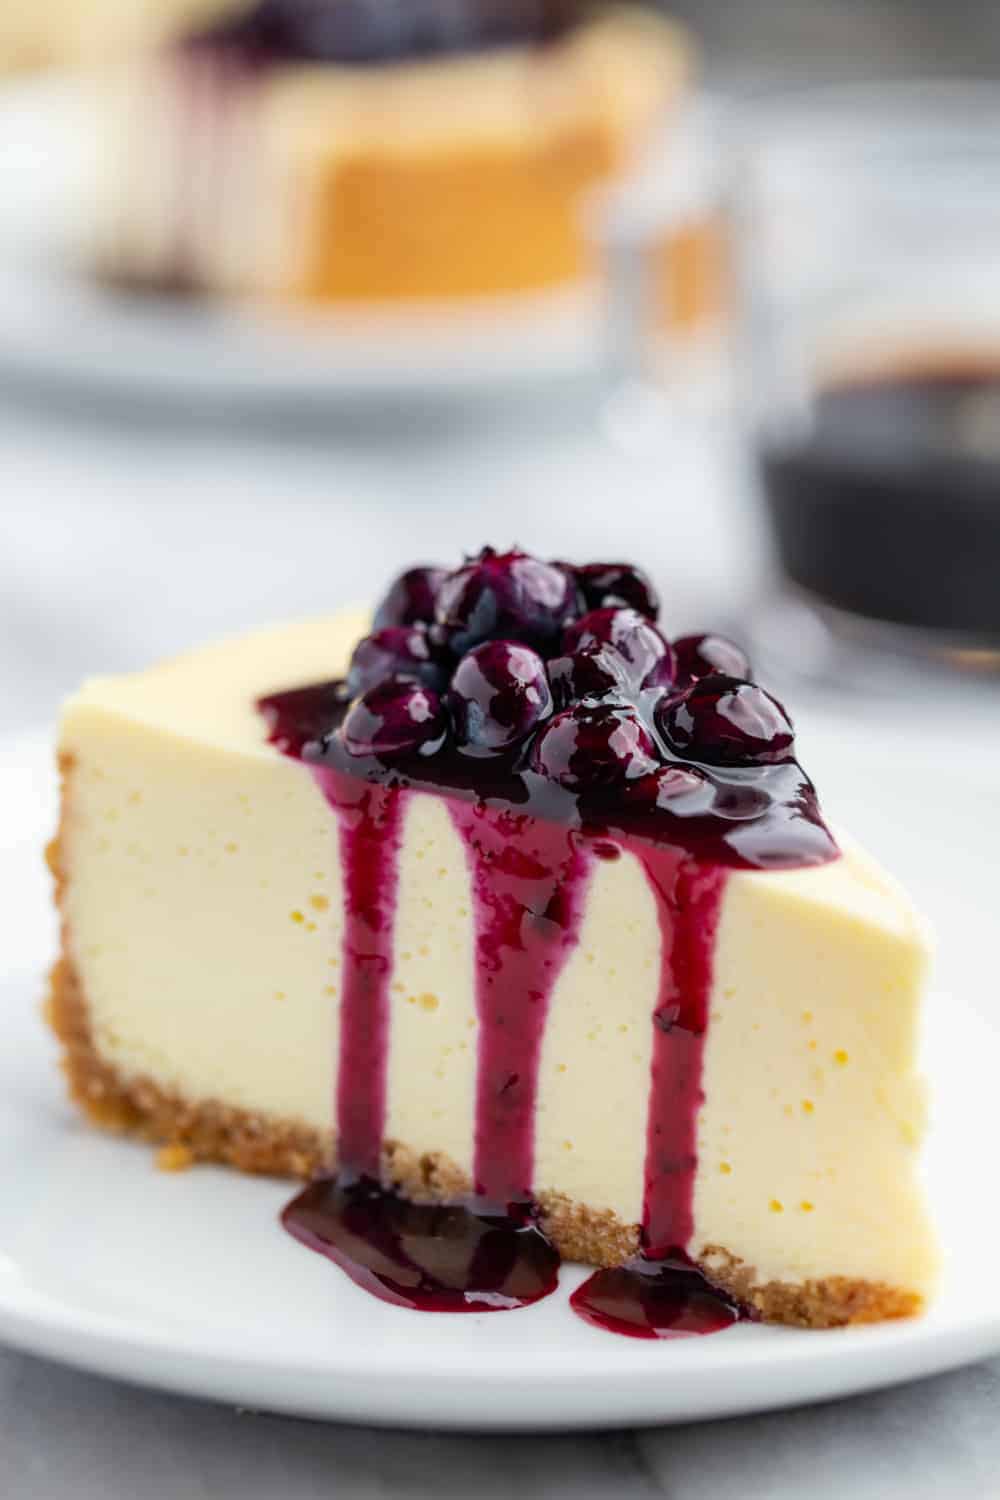 https://www.mybakingaddiction.com/wp-content/uploads/2019/07/Cheesecake-with-Blueberry-Sauce-57-of-61_resized.jpg